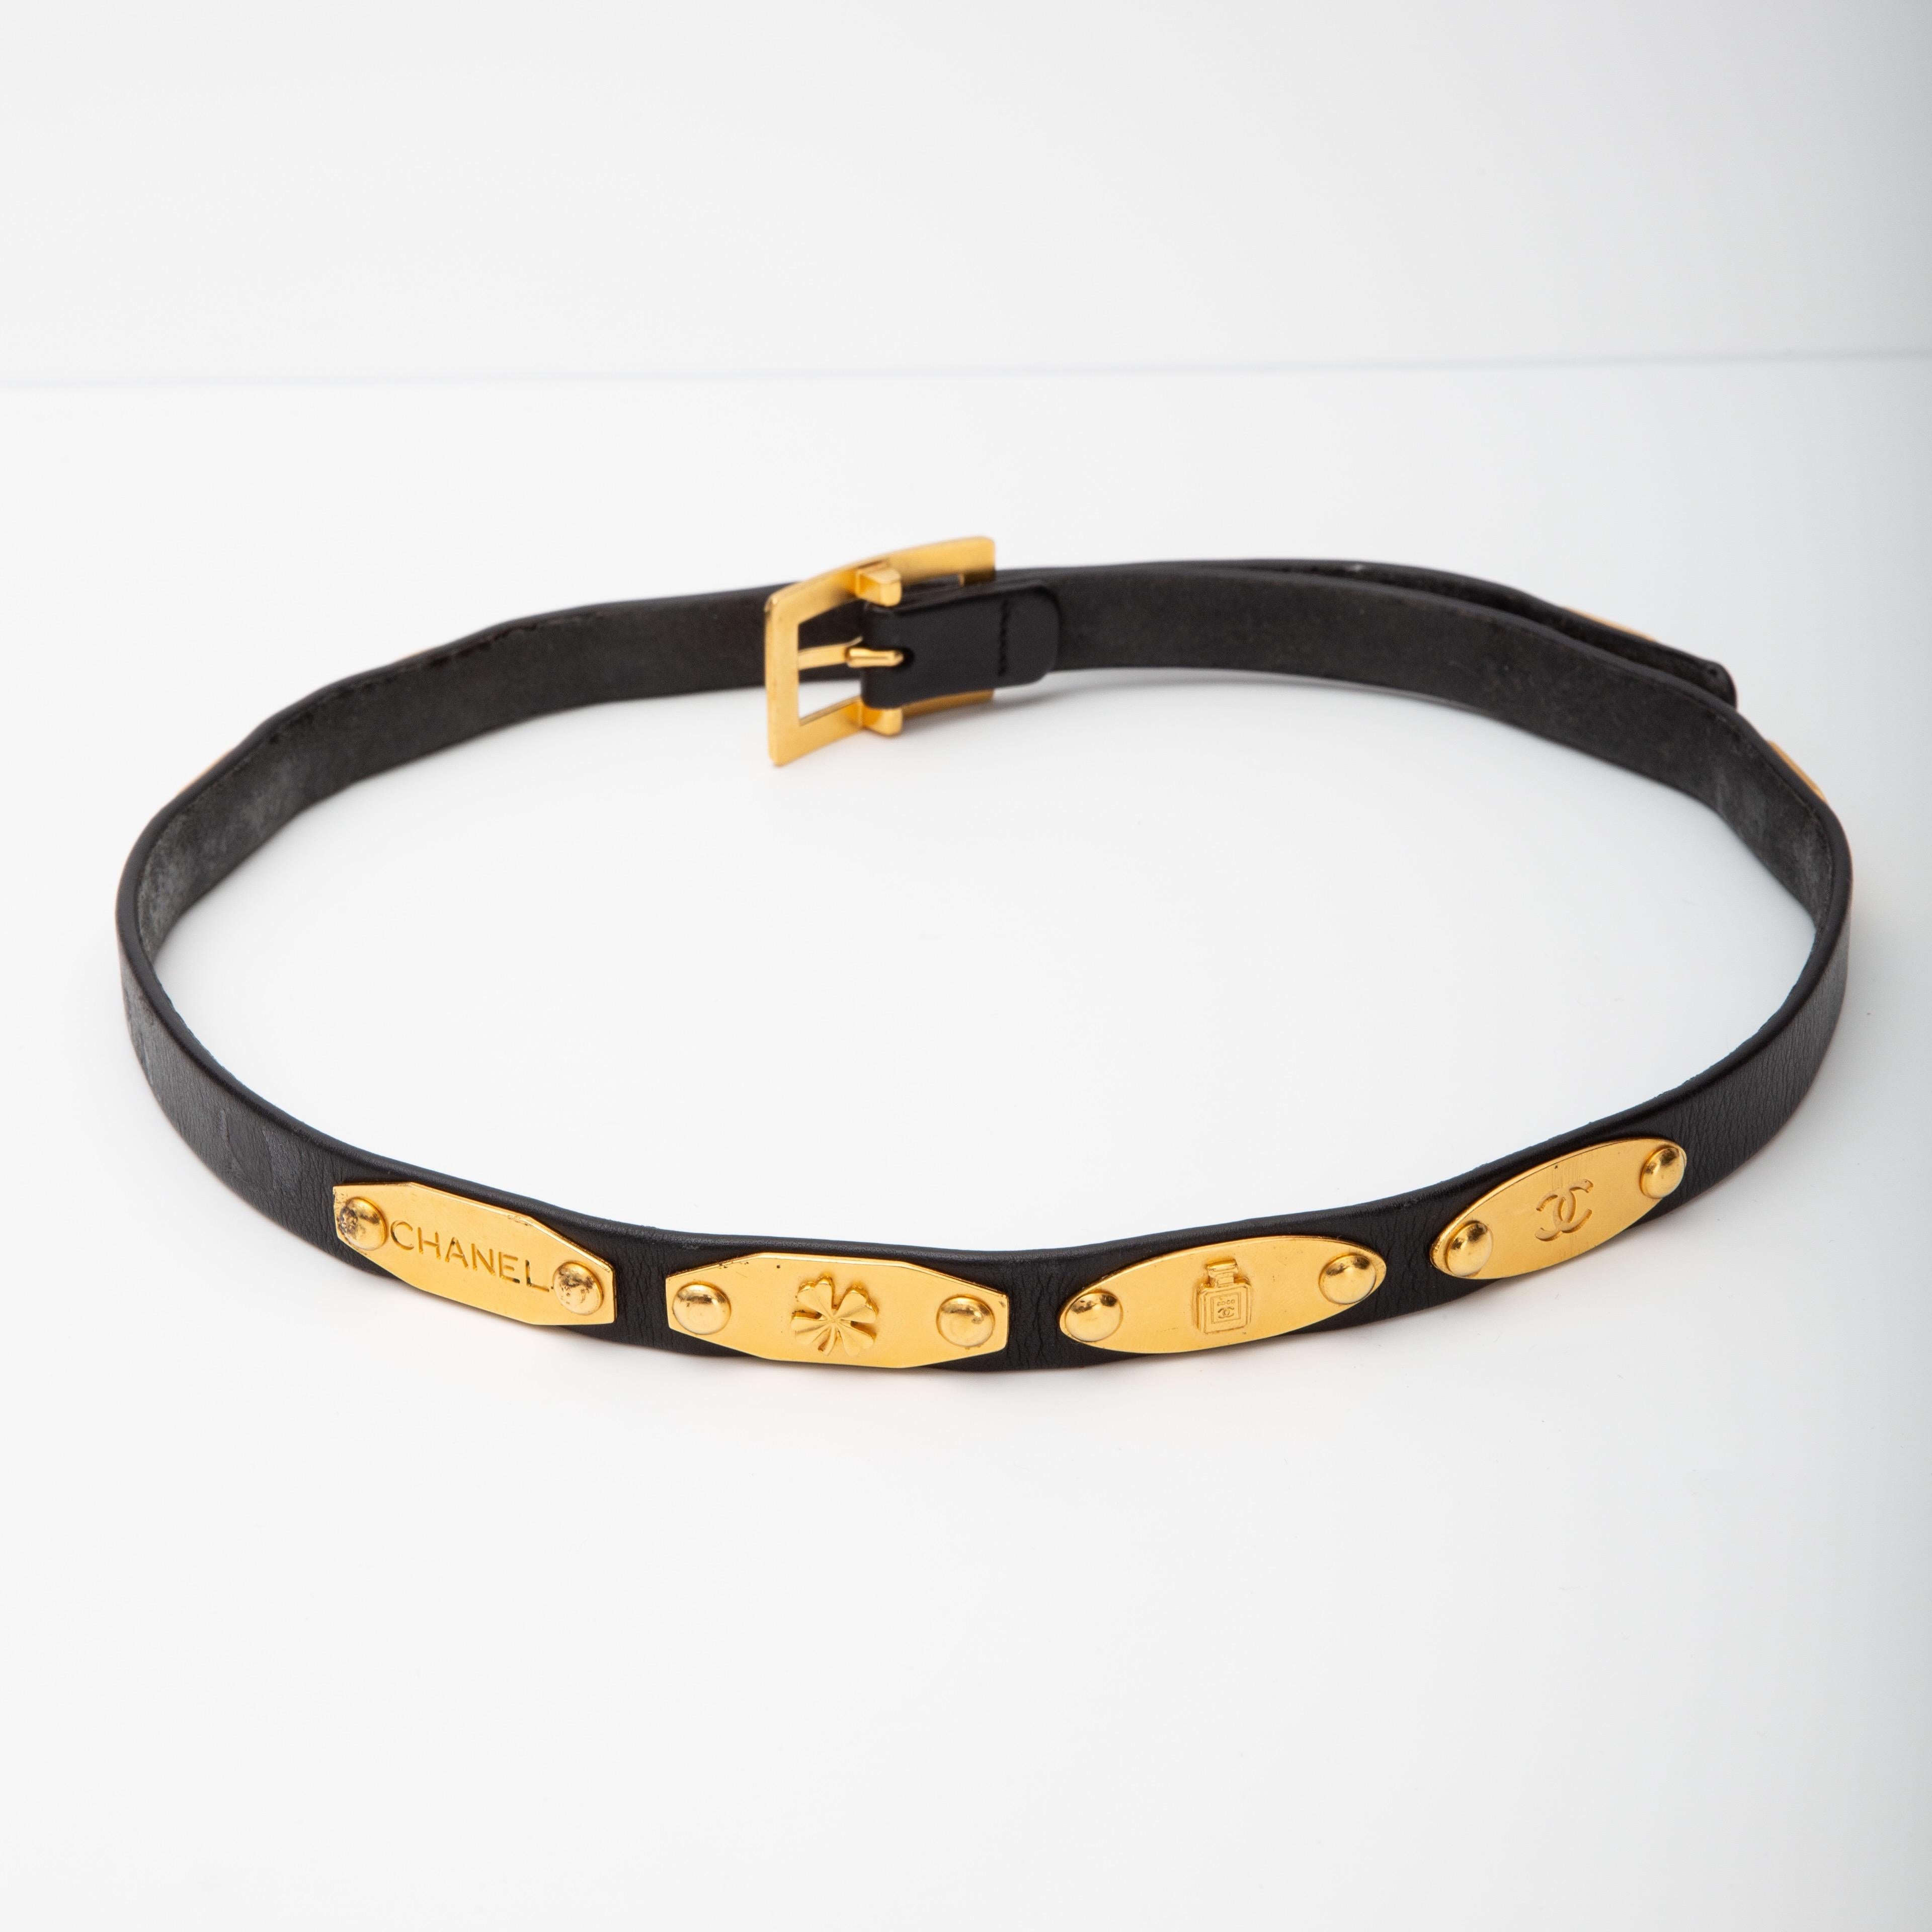 Cette ceinture est issue de la collection 1995-1996. Elle est en cuir, comporte des éléments en or, une boucle et des ornements Chanel.

COULEUR : Noir
MATERIAL : Cuir
CODE : 95 [logo] A
MESURES : L 30,5